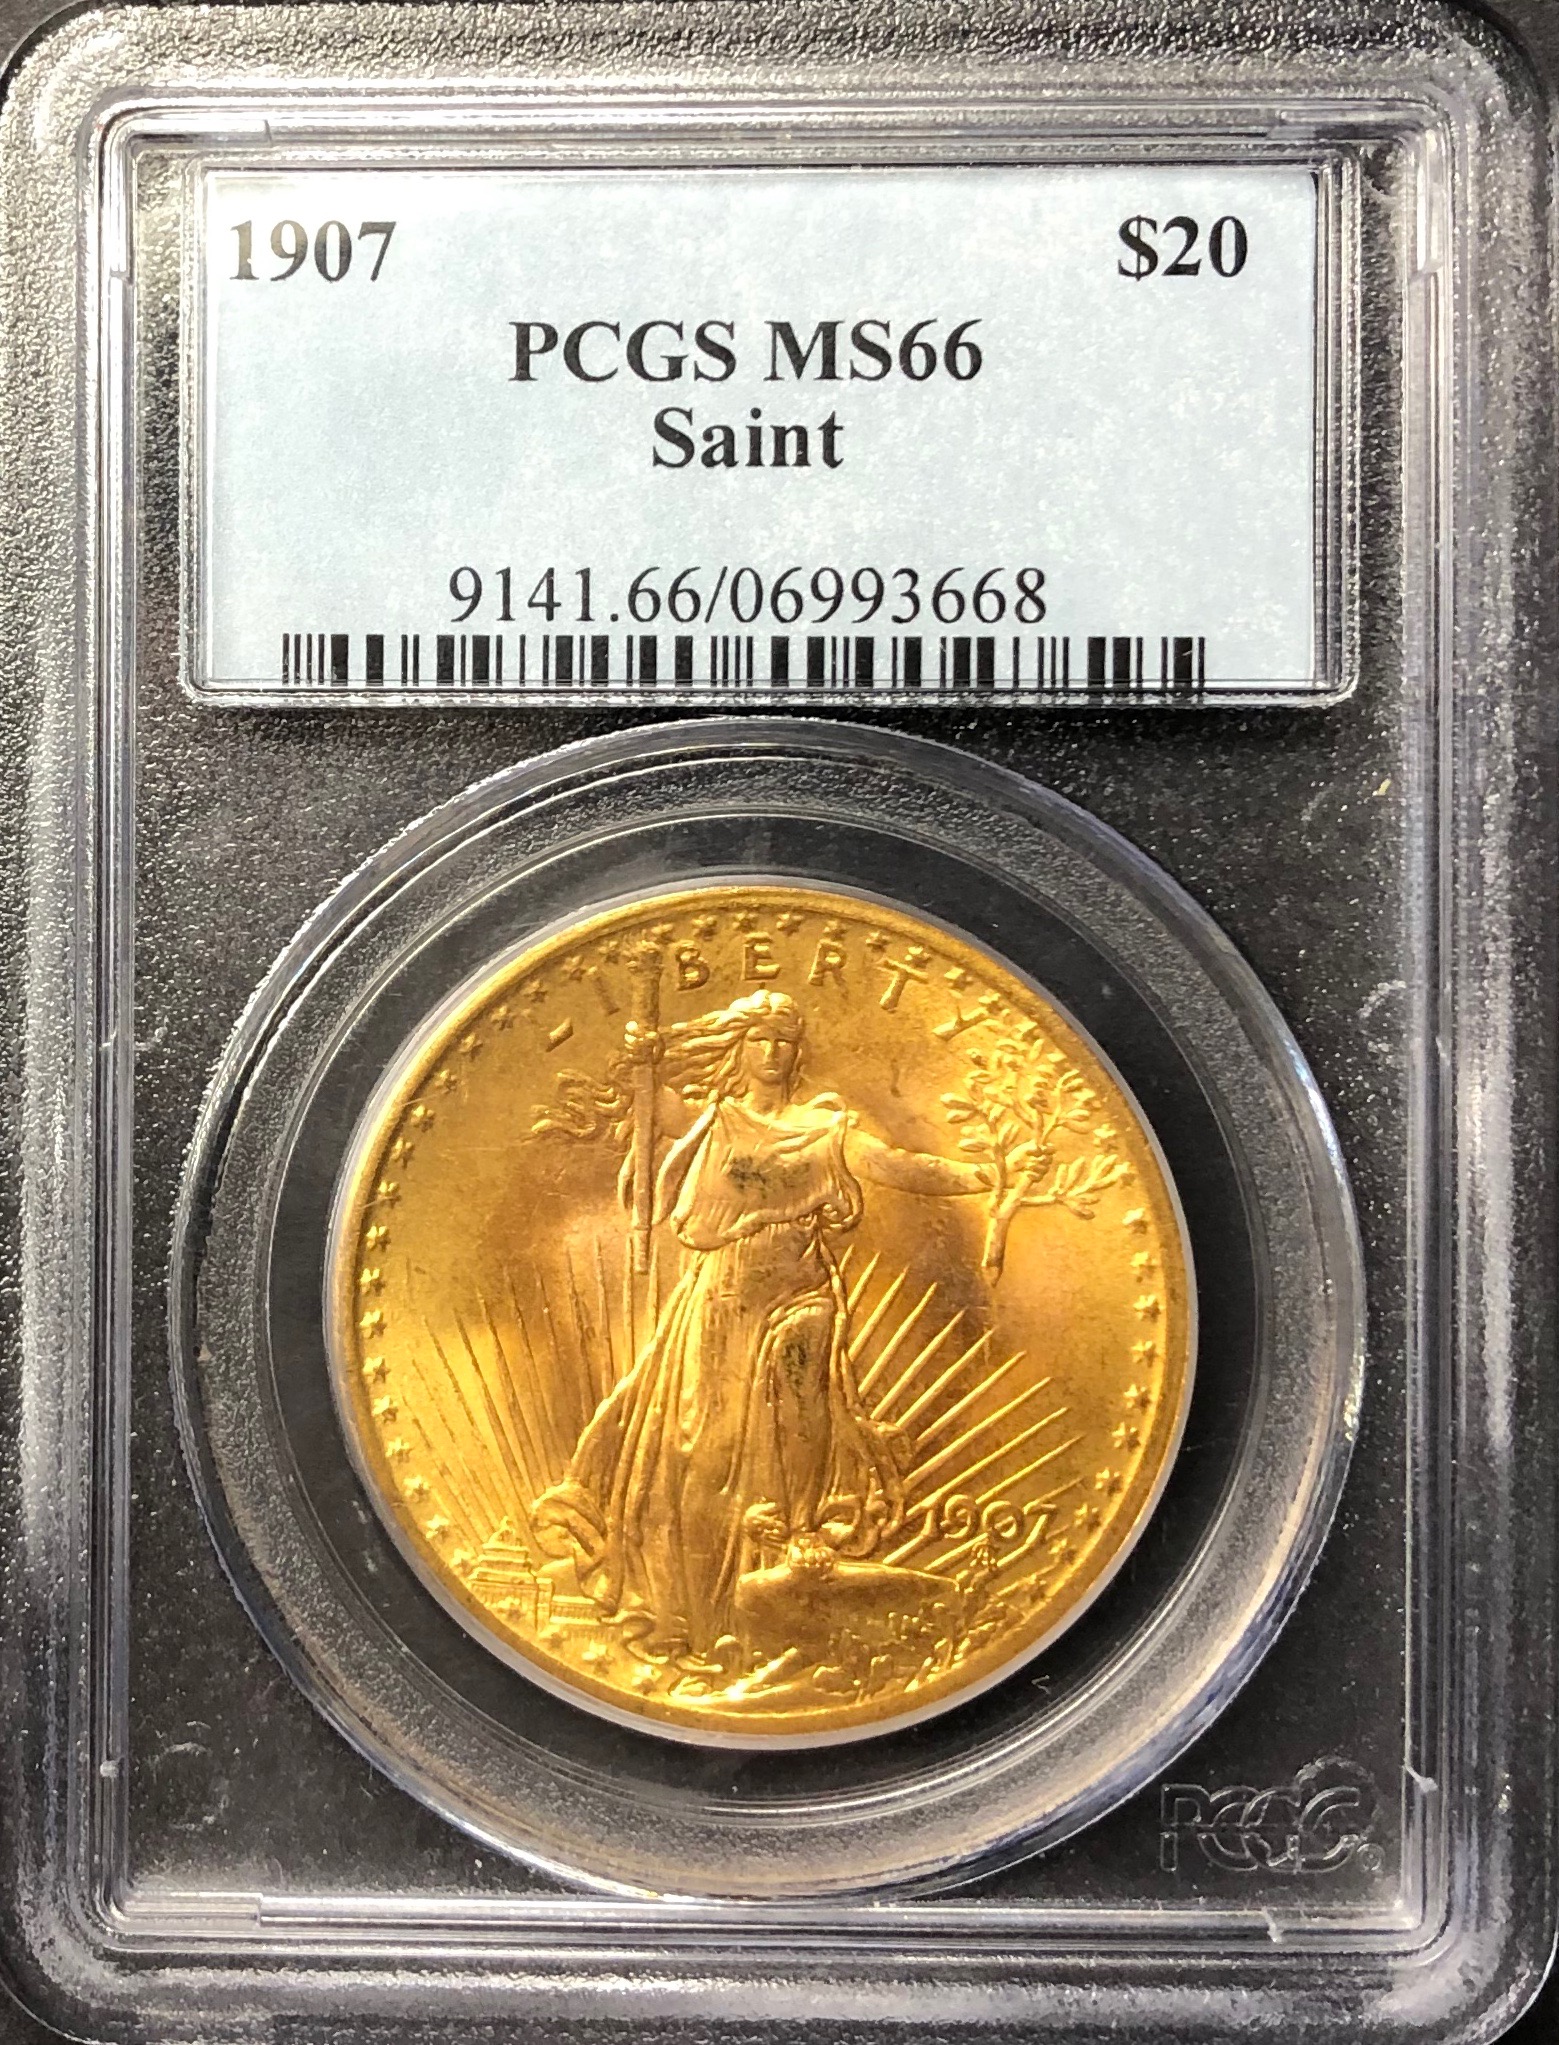 米国セントゴーデンス 20ドル金貨1924年 MS66 プライスガイド$4500